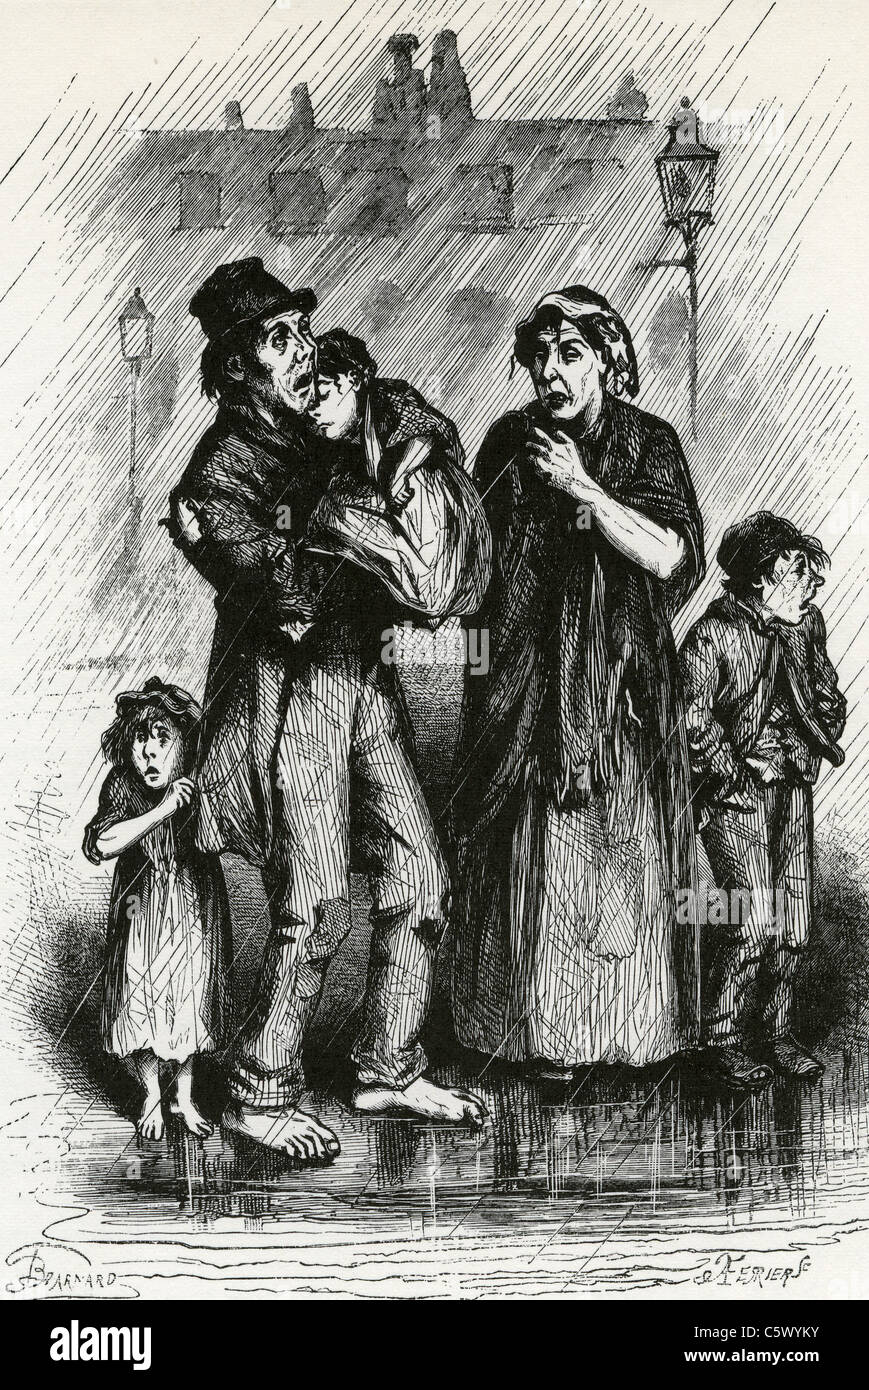 ARME Familie kommen in Liverpool aus wo sie, wanderte nach Amerika, planen wie ein Zeitgenosse print entnehmen Sie bitte der 1840er Jahre Stockfoto